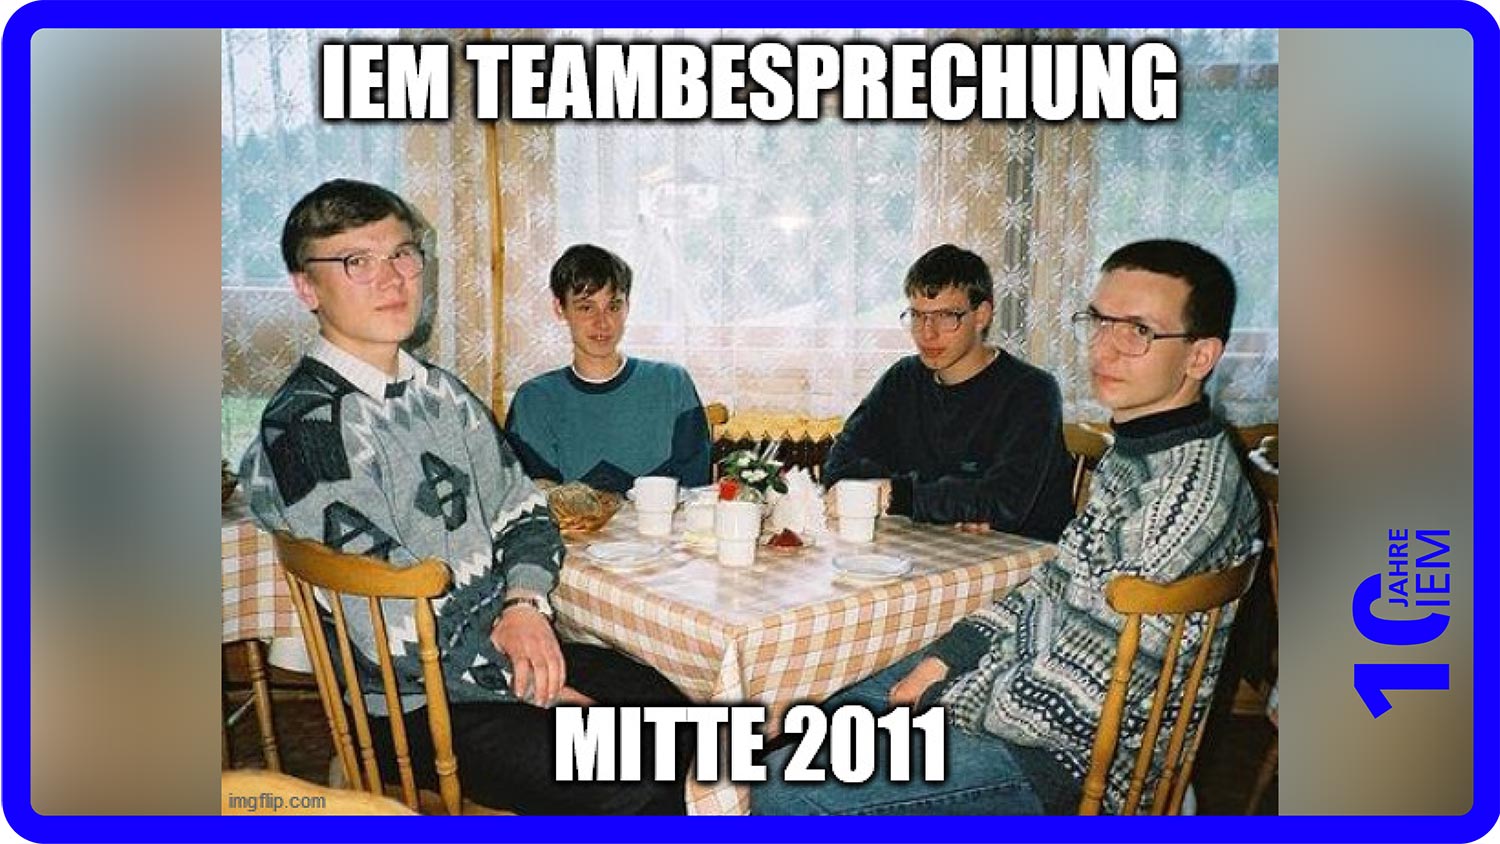 Meme mit 4 Männern an einem Tisch, mit dem Schriftzug "IEM Teambesprechung Mitte 2011"